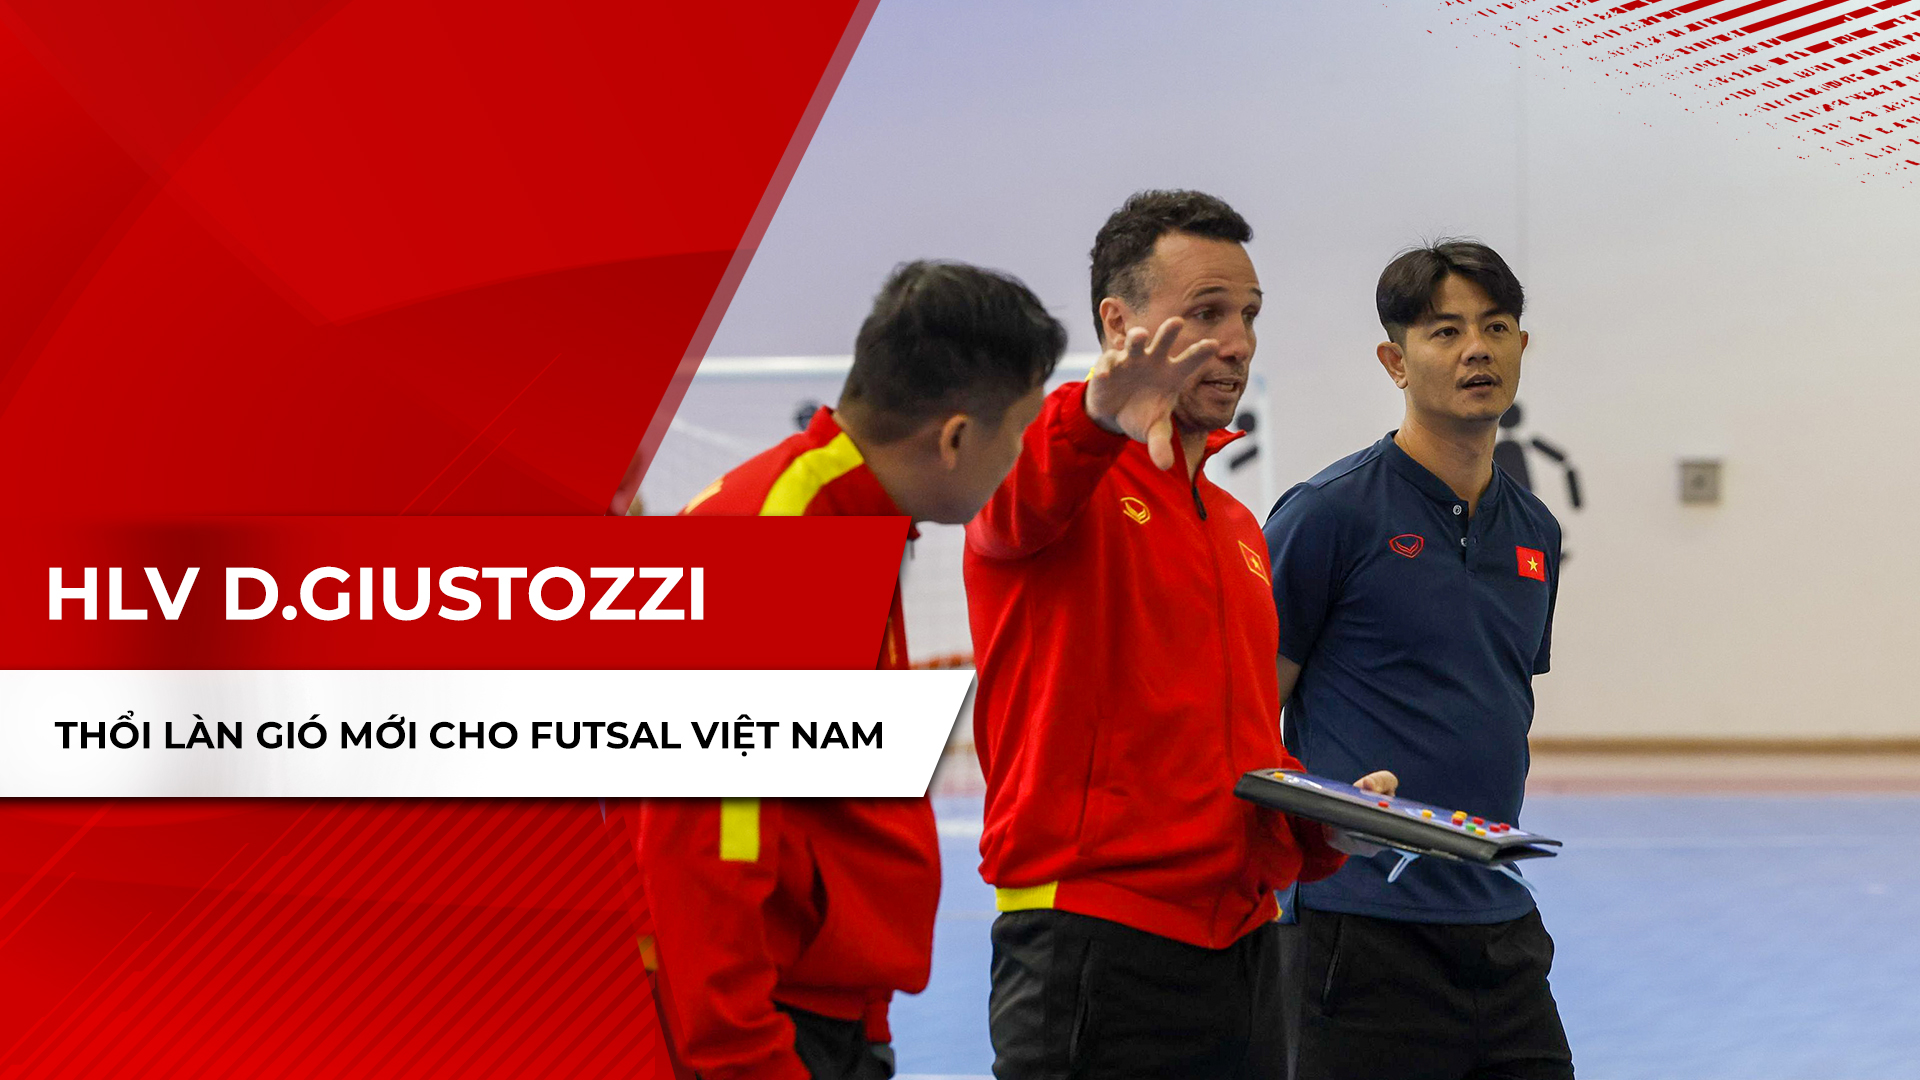 HLV Diego Giustozzi thổi làn gió mới cho Futsal Việt Nam - Câu chuyện thể thao